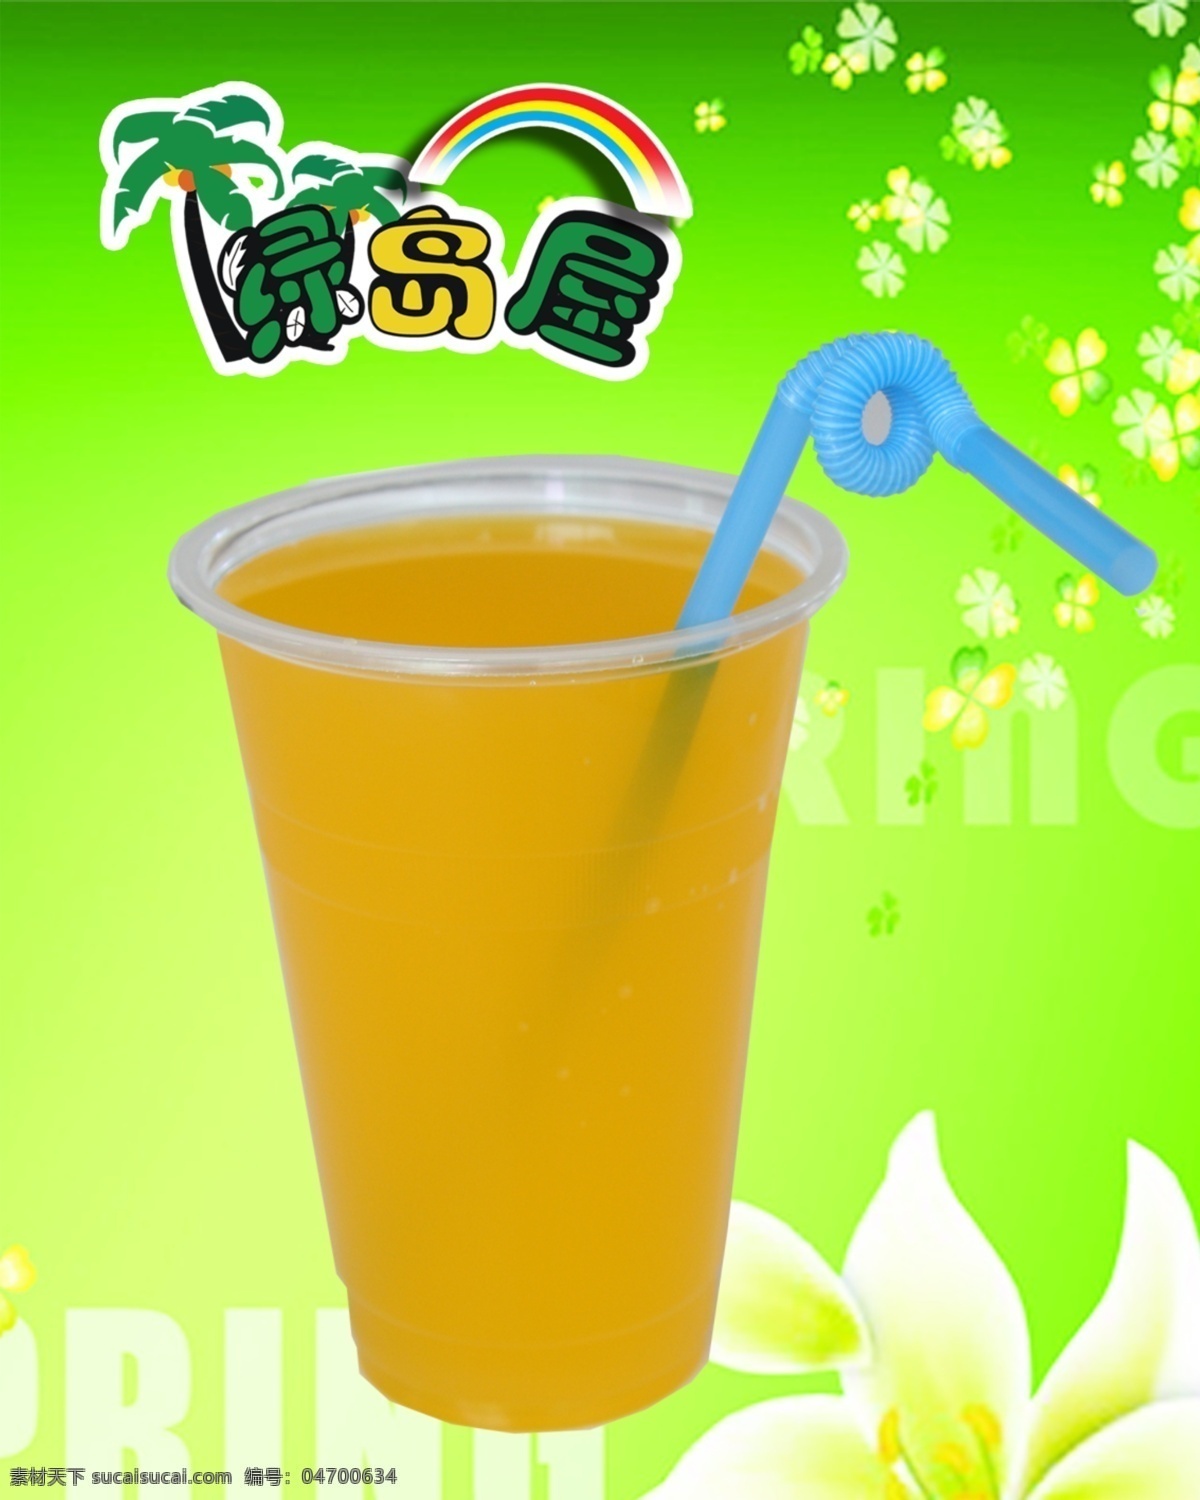 雀巢橙c 雀巢橙汁 茶 绿岛屋 茶饮料 国内广告设计 广告设计模板 源文件